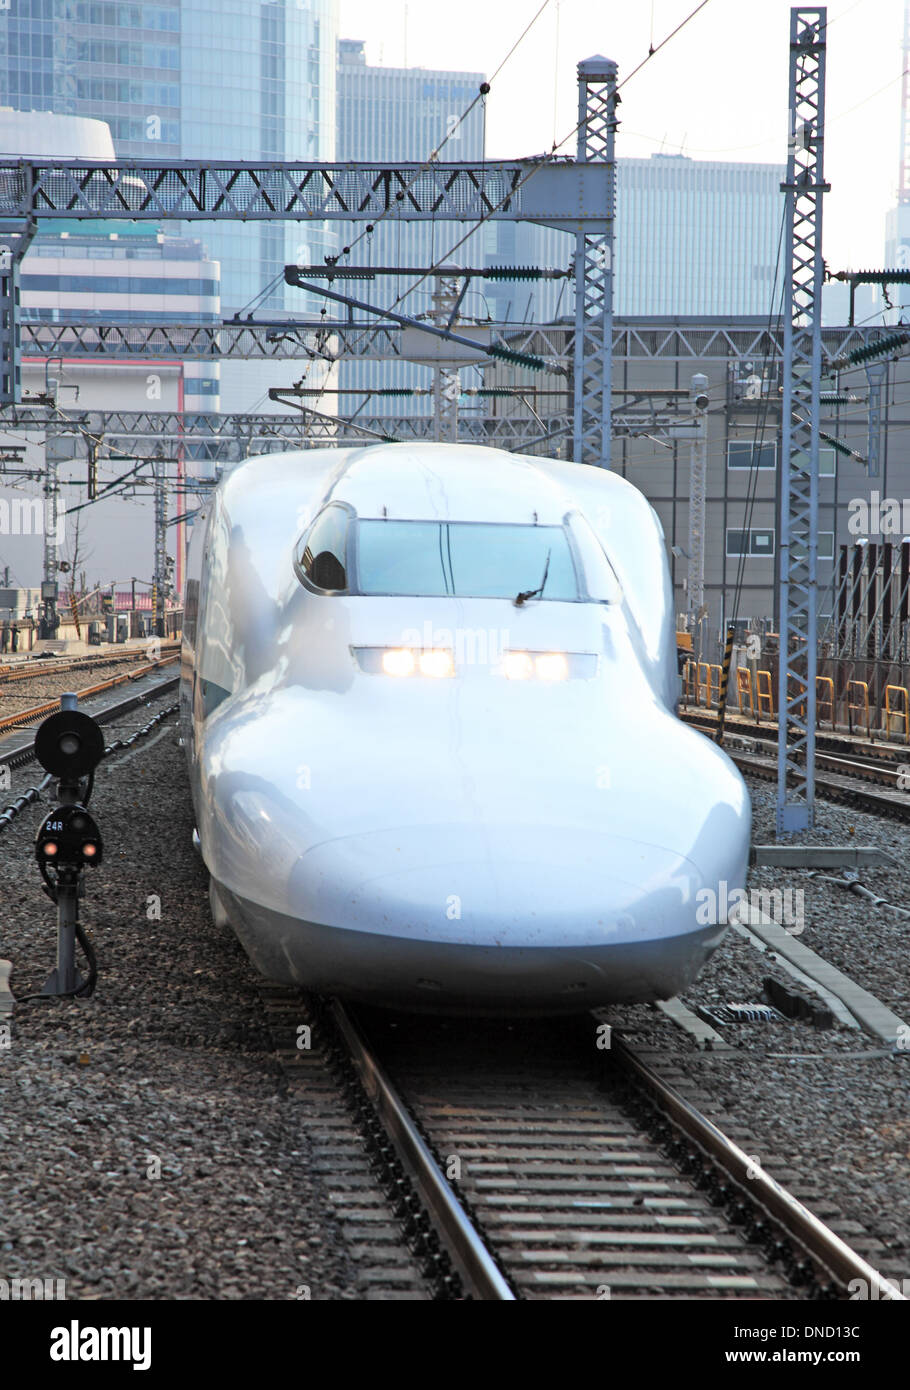 Japan, Tokyo, Shinkansen bullet train on tracks Stock Photo